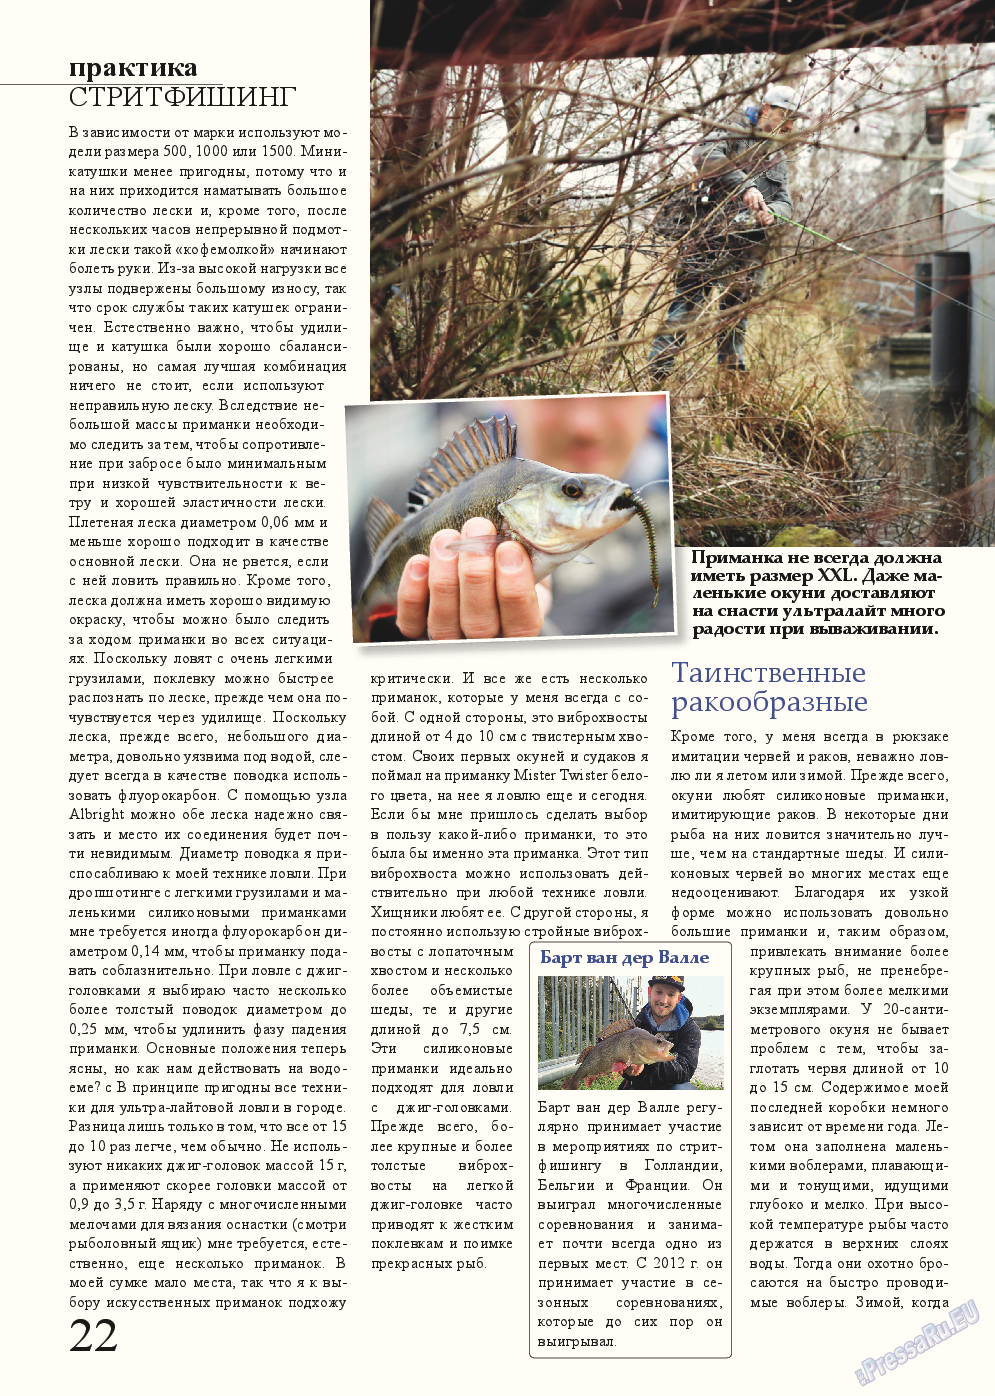 Рыбалка Plus, журнал. 2014 №11 стр.22